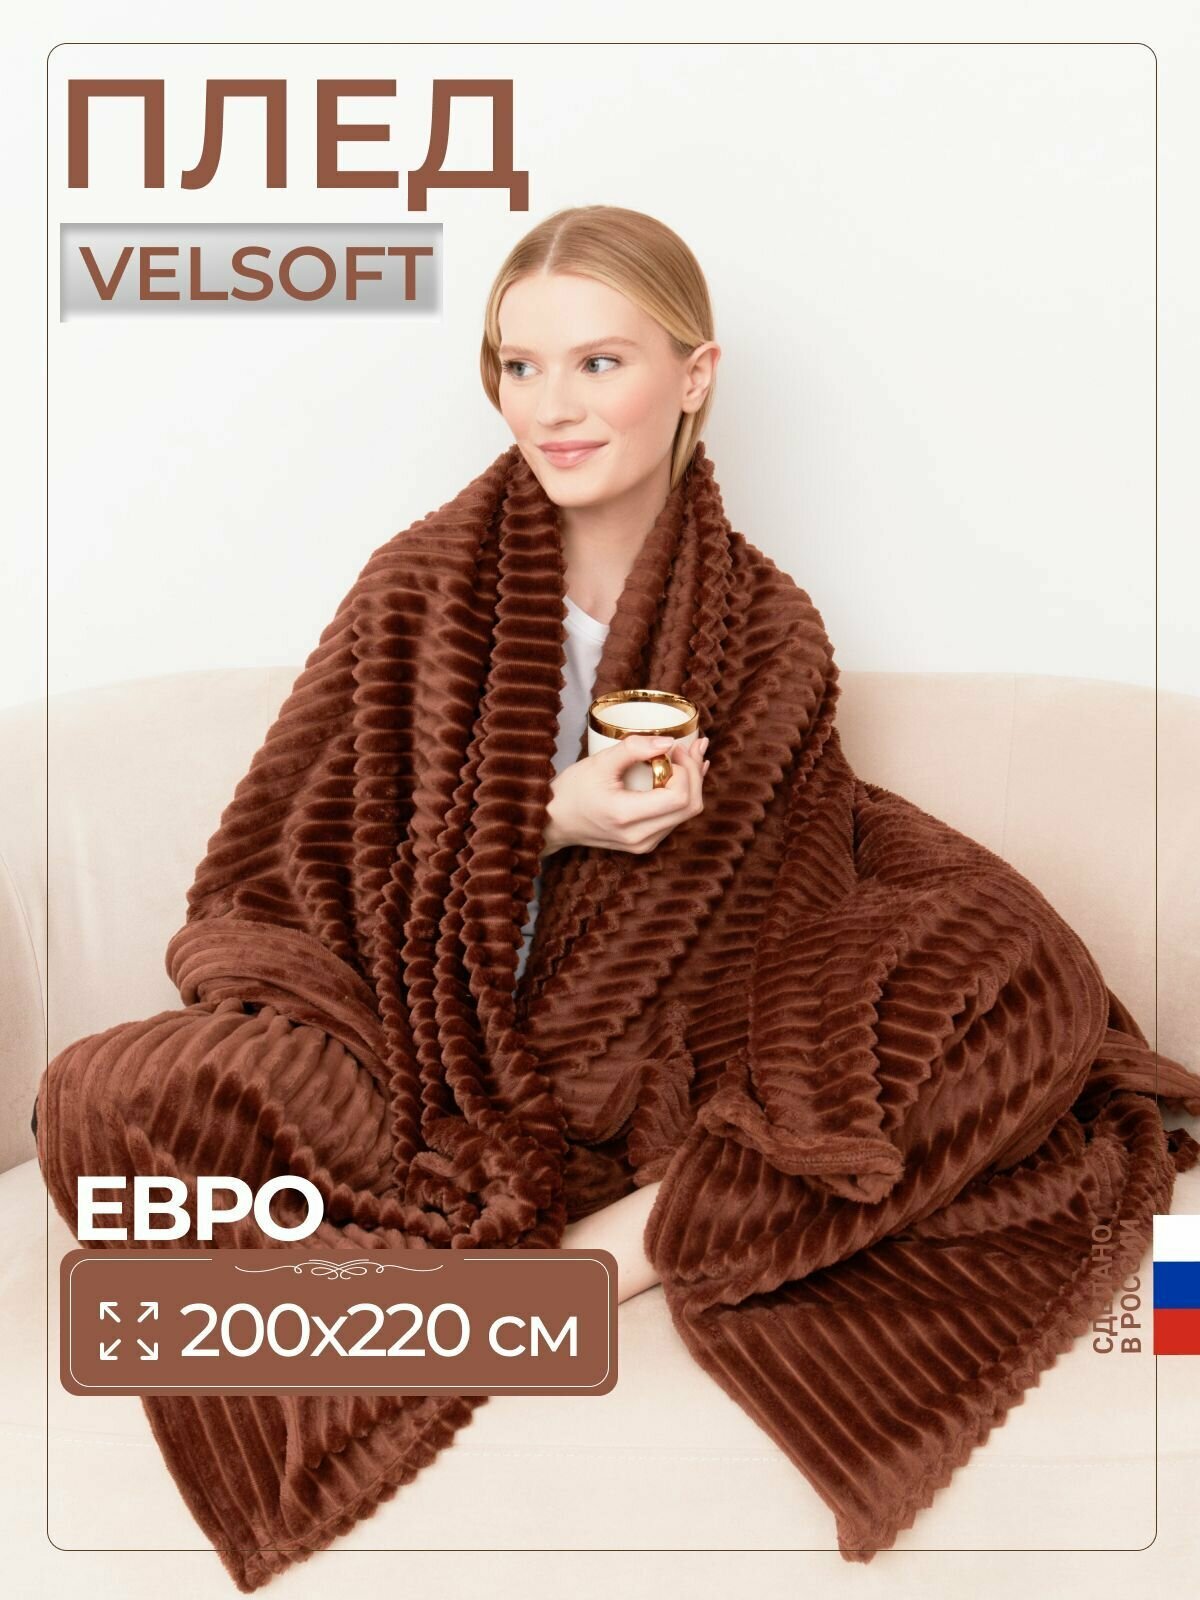 Плед покрывало Velsoft евро 200х220 см на диван, кровать, для пикника плюшевый. - фотография № 1